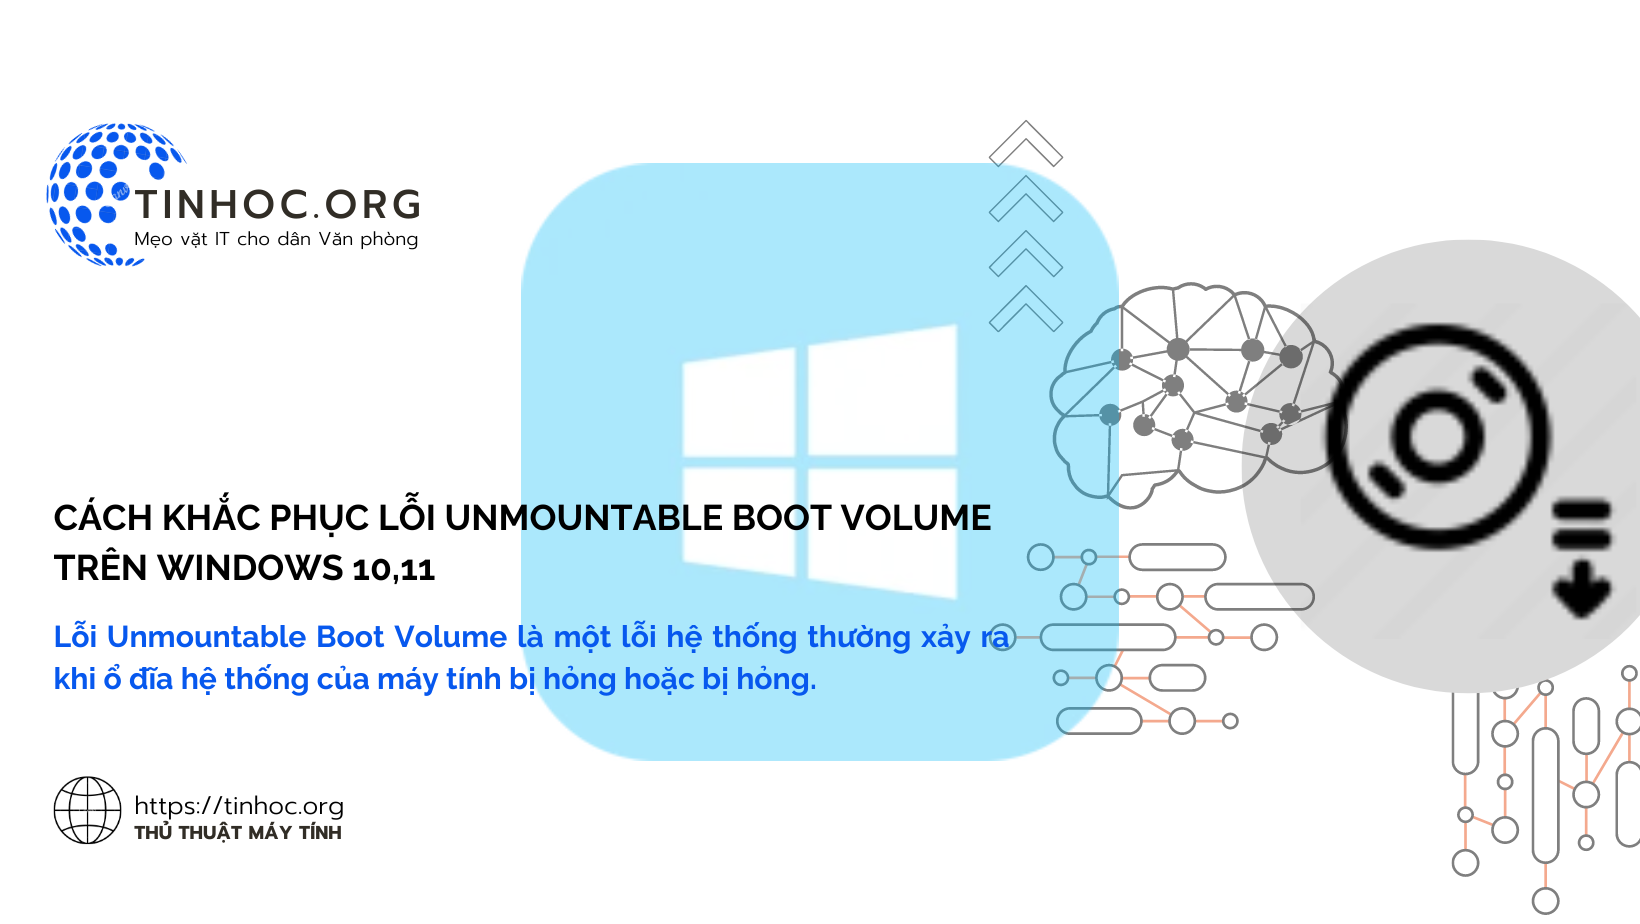 Lỗi Unmountable Boot Volume là một lỗi hệ thống thường xảy ra khi ổ đĩa hệ thống của máy tính bị hỏng hoặc bị hỏng.